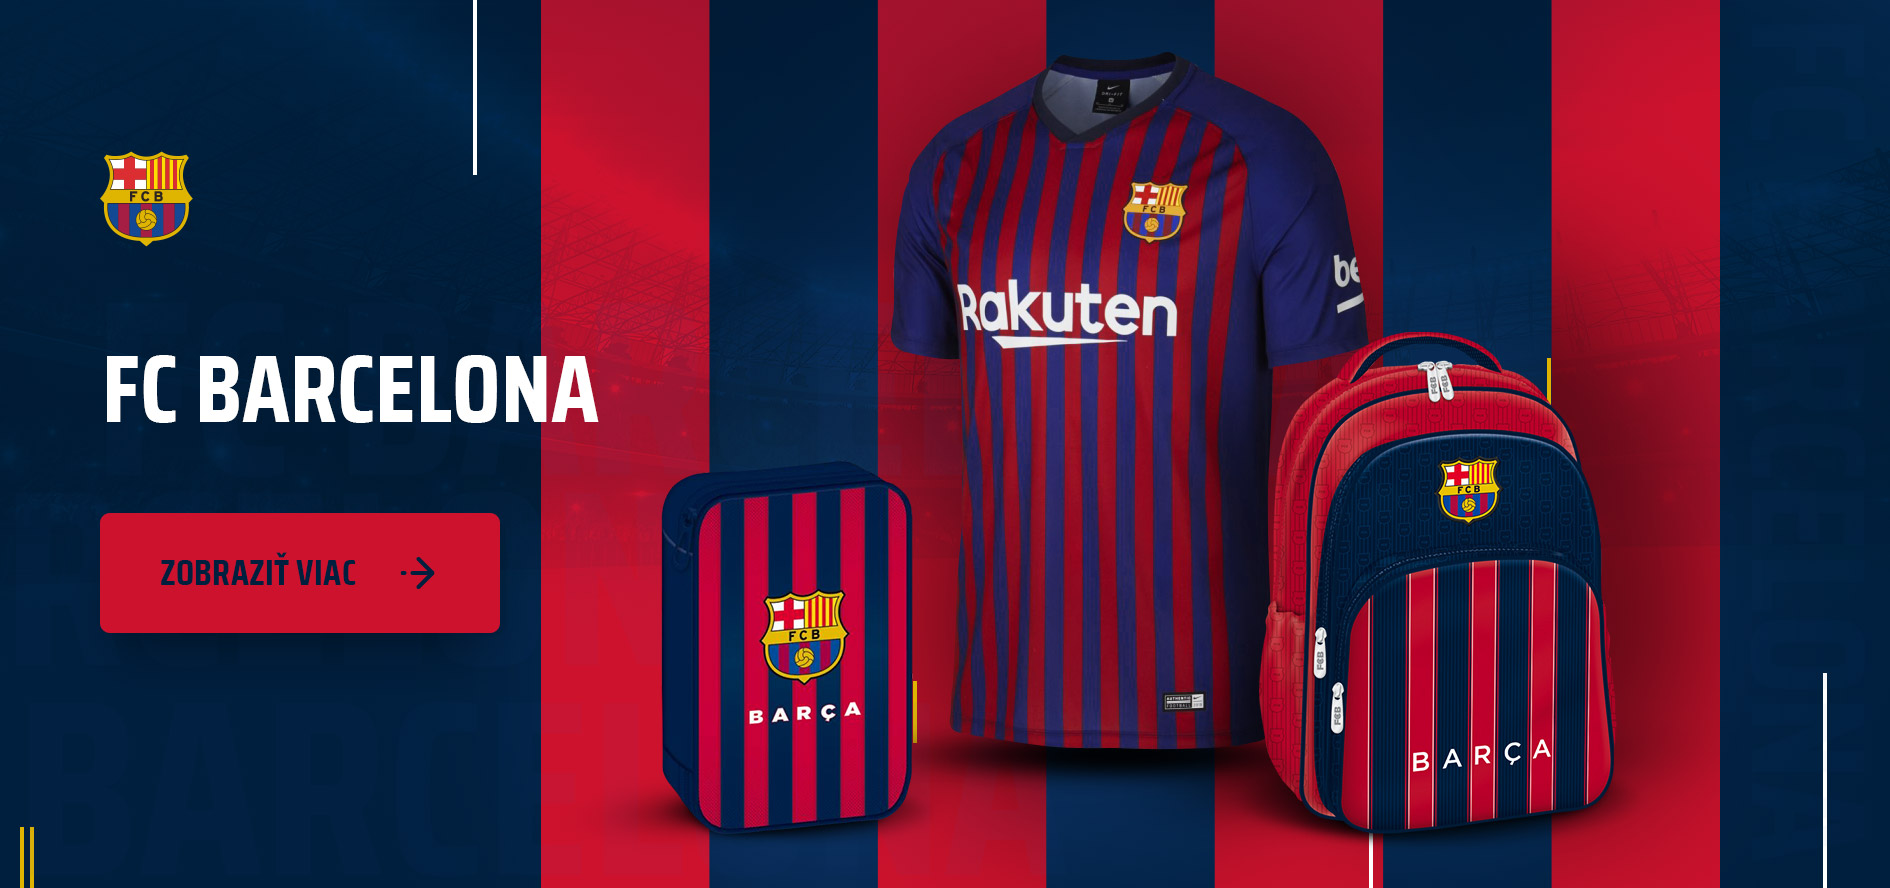 FC Barcelona banner